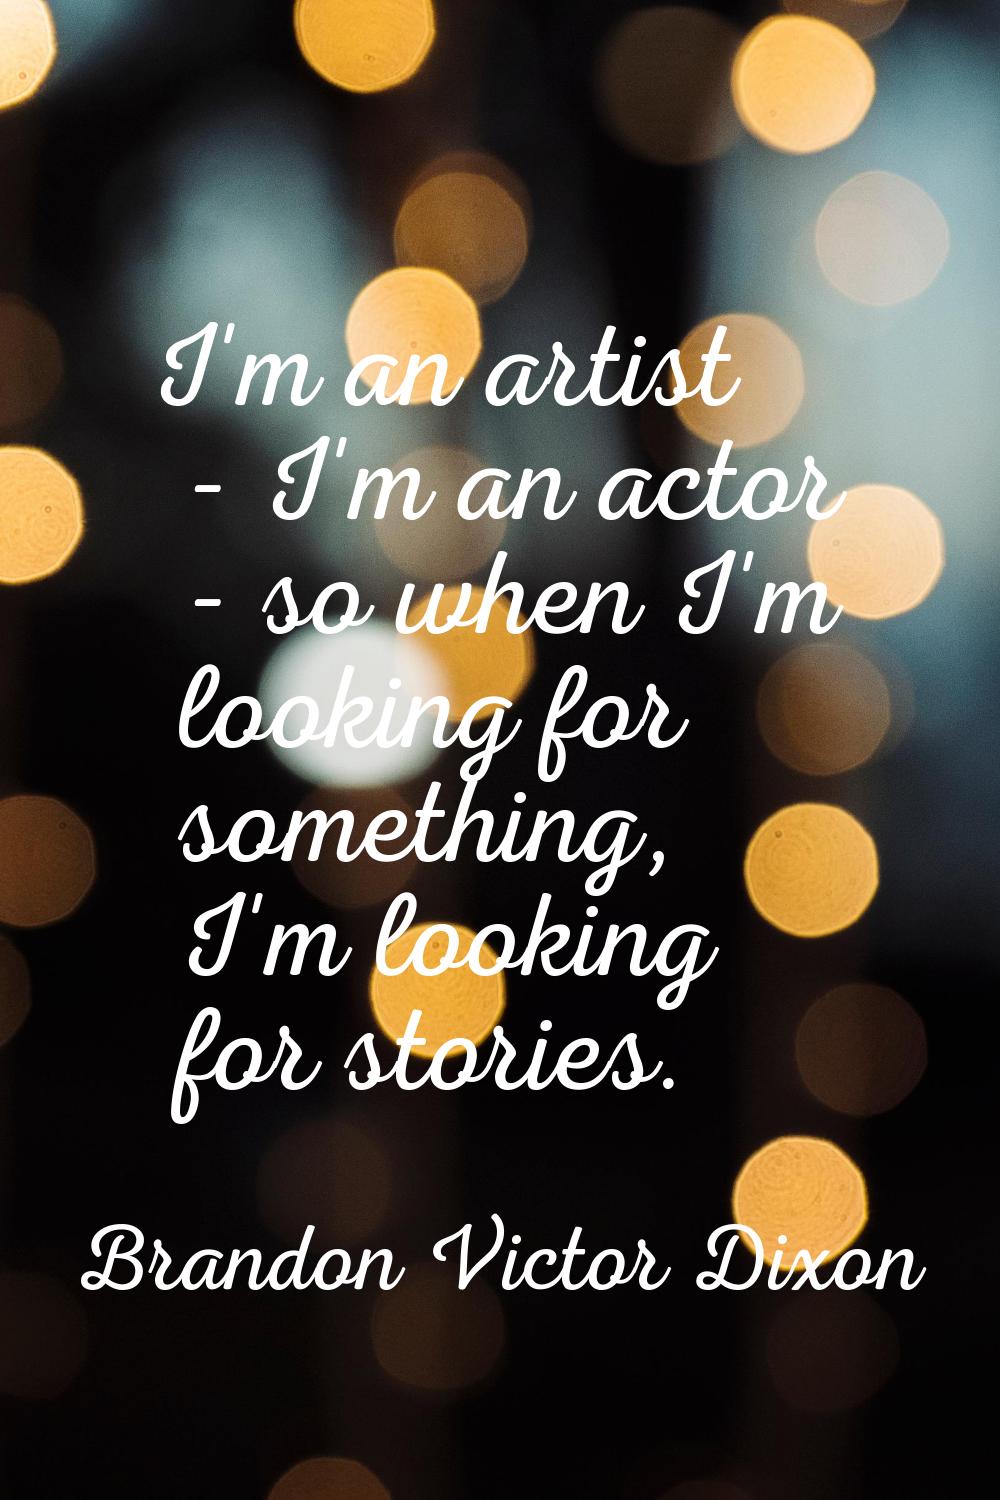 I'm an artist - I'm an actor - so when I'm looking for something, I'm looking for stories.